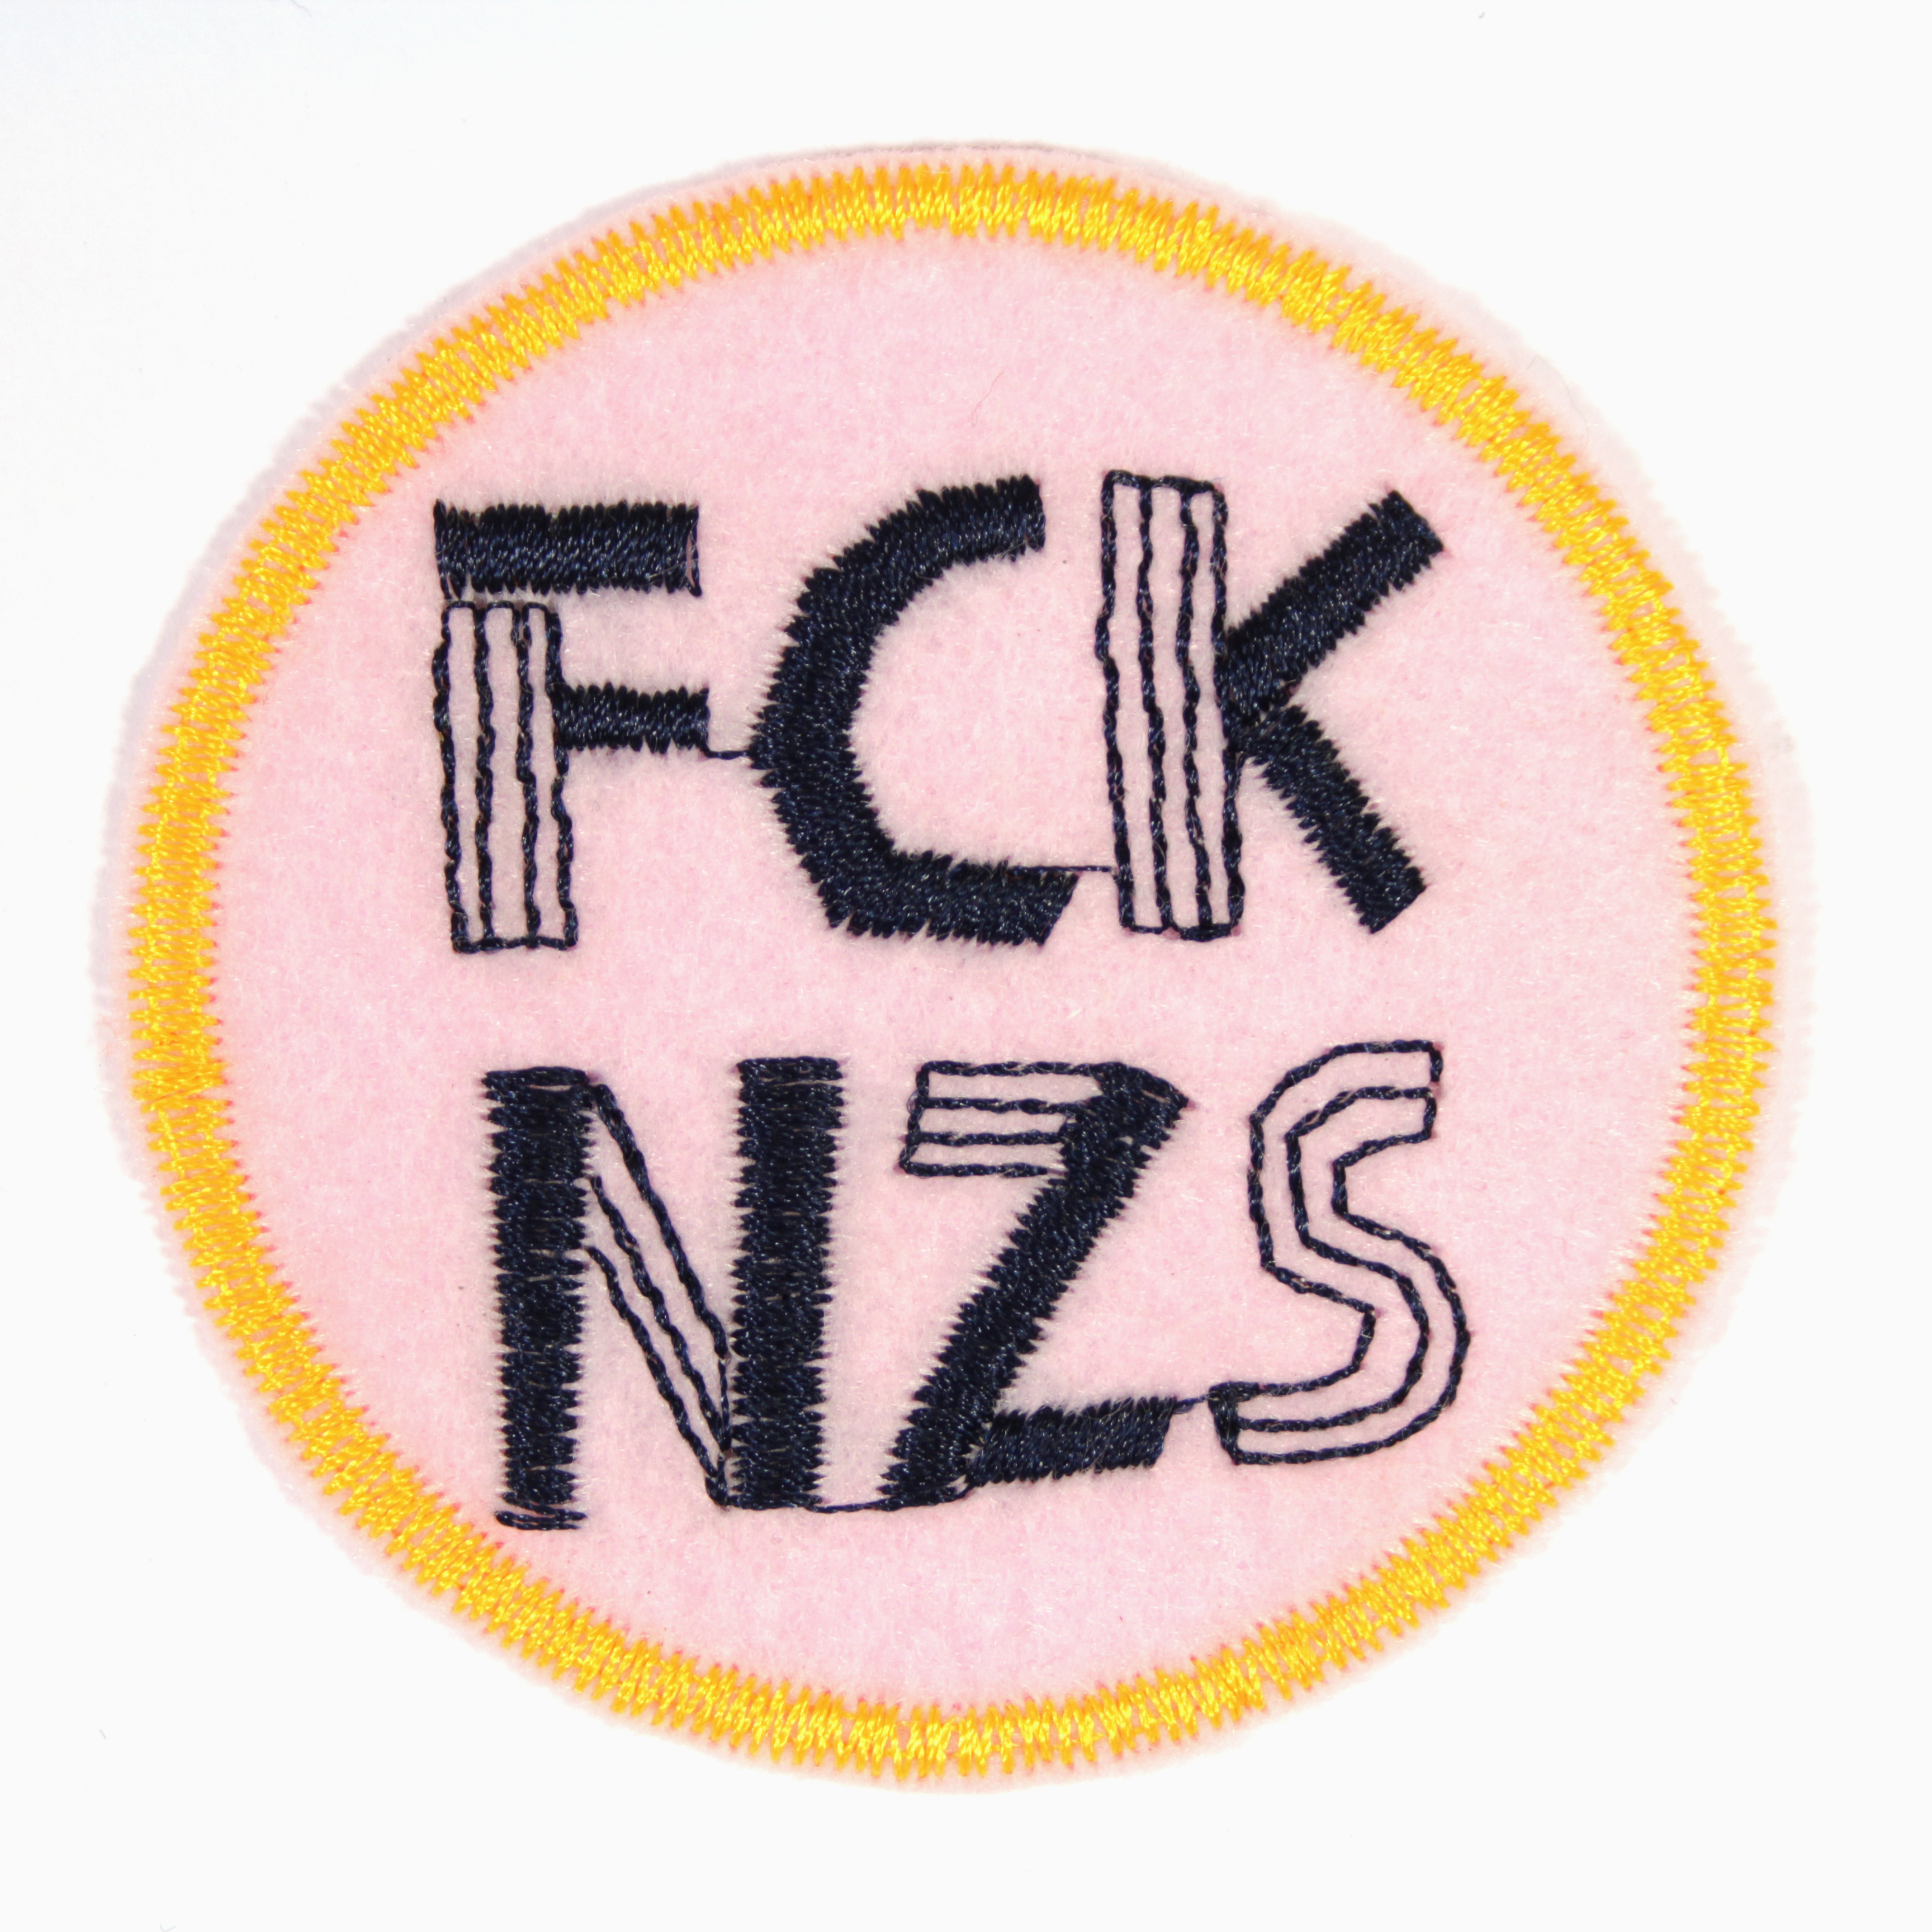 Aufnäher rund FCK NZS auf pink mit neon orange rand